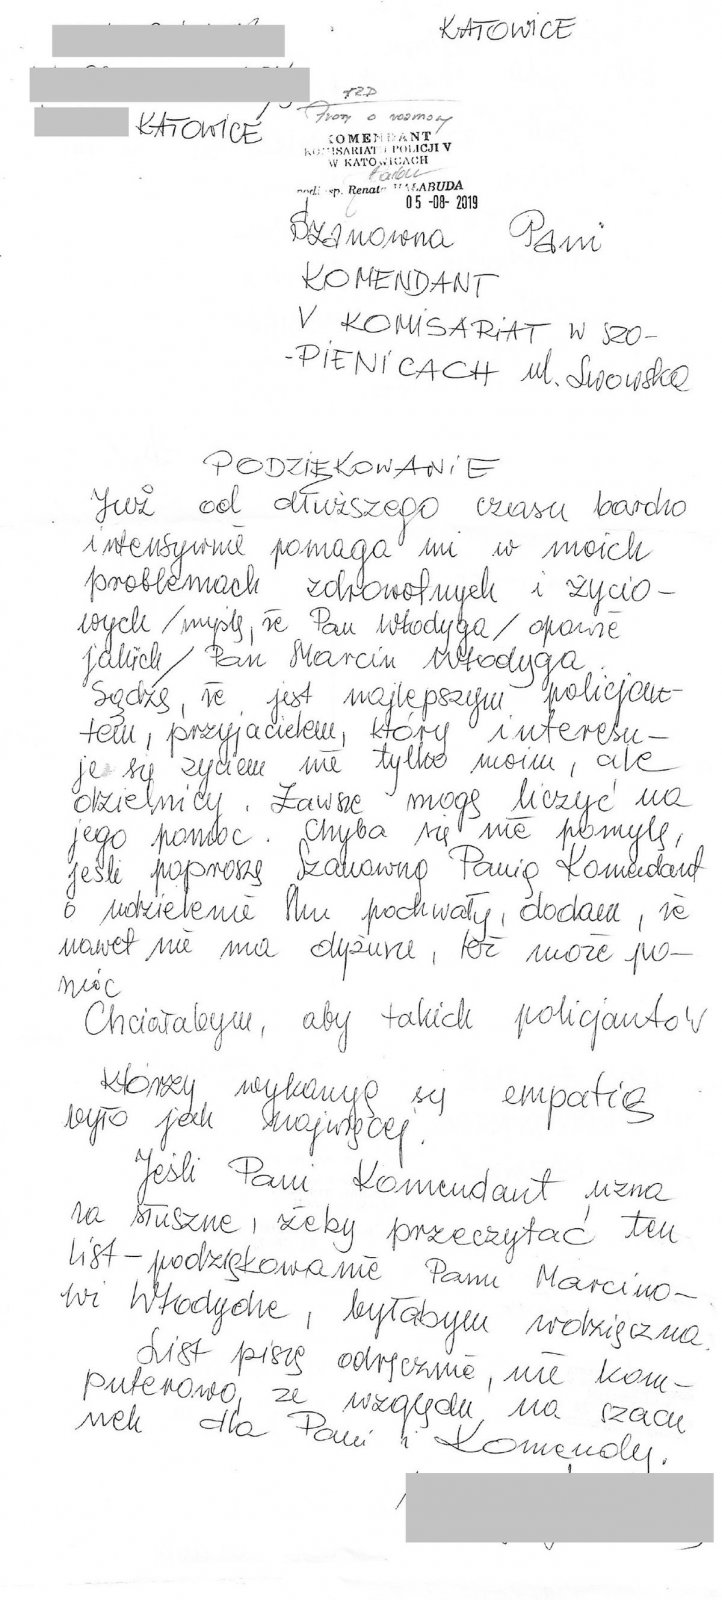 Na zdjęciu zamieszczone są podziękowania od jednej z mieszkanek Katowic dla dzielnicowego z komisariatu Policji nr 5 w Katowicach